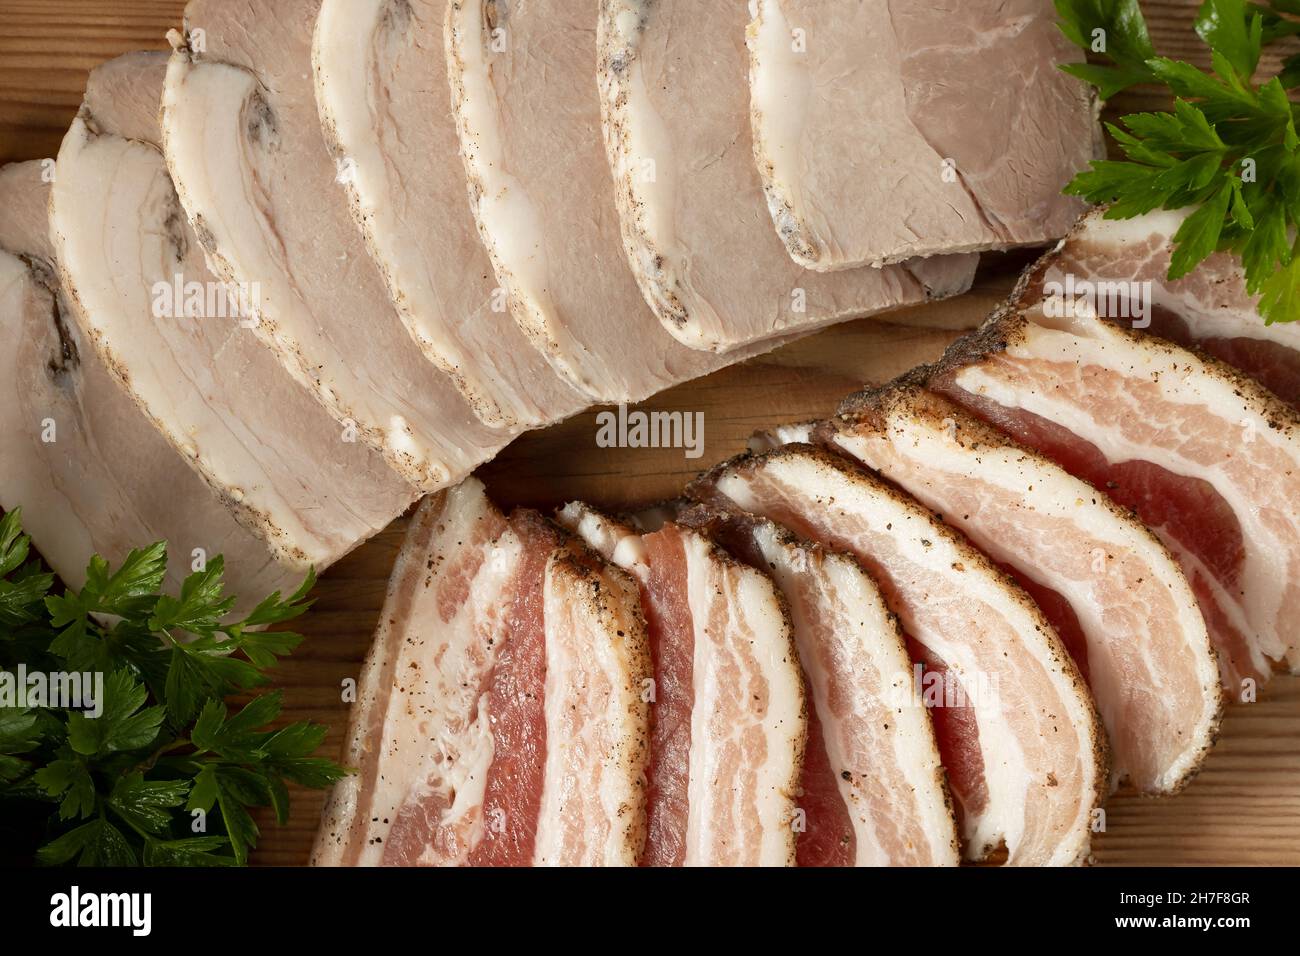 Sliced pork deli meats on wooden platter Stock Photo